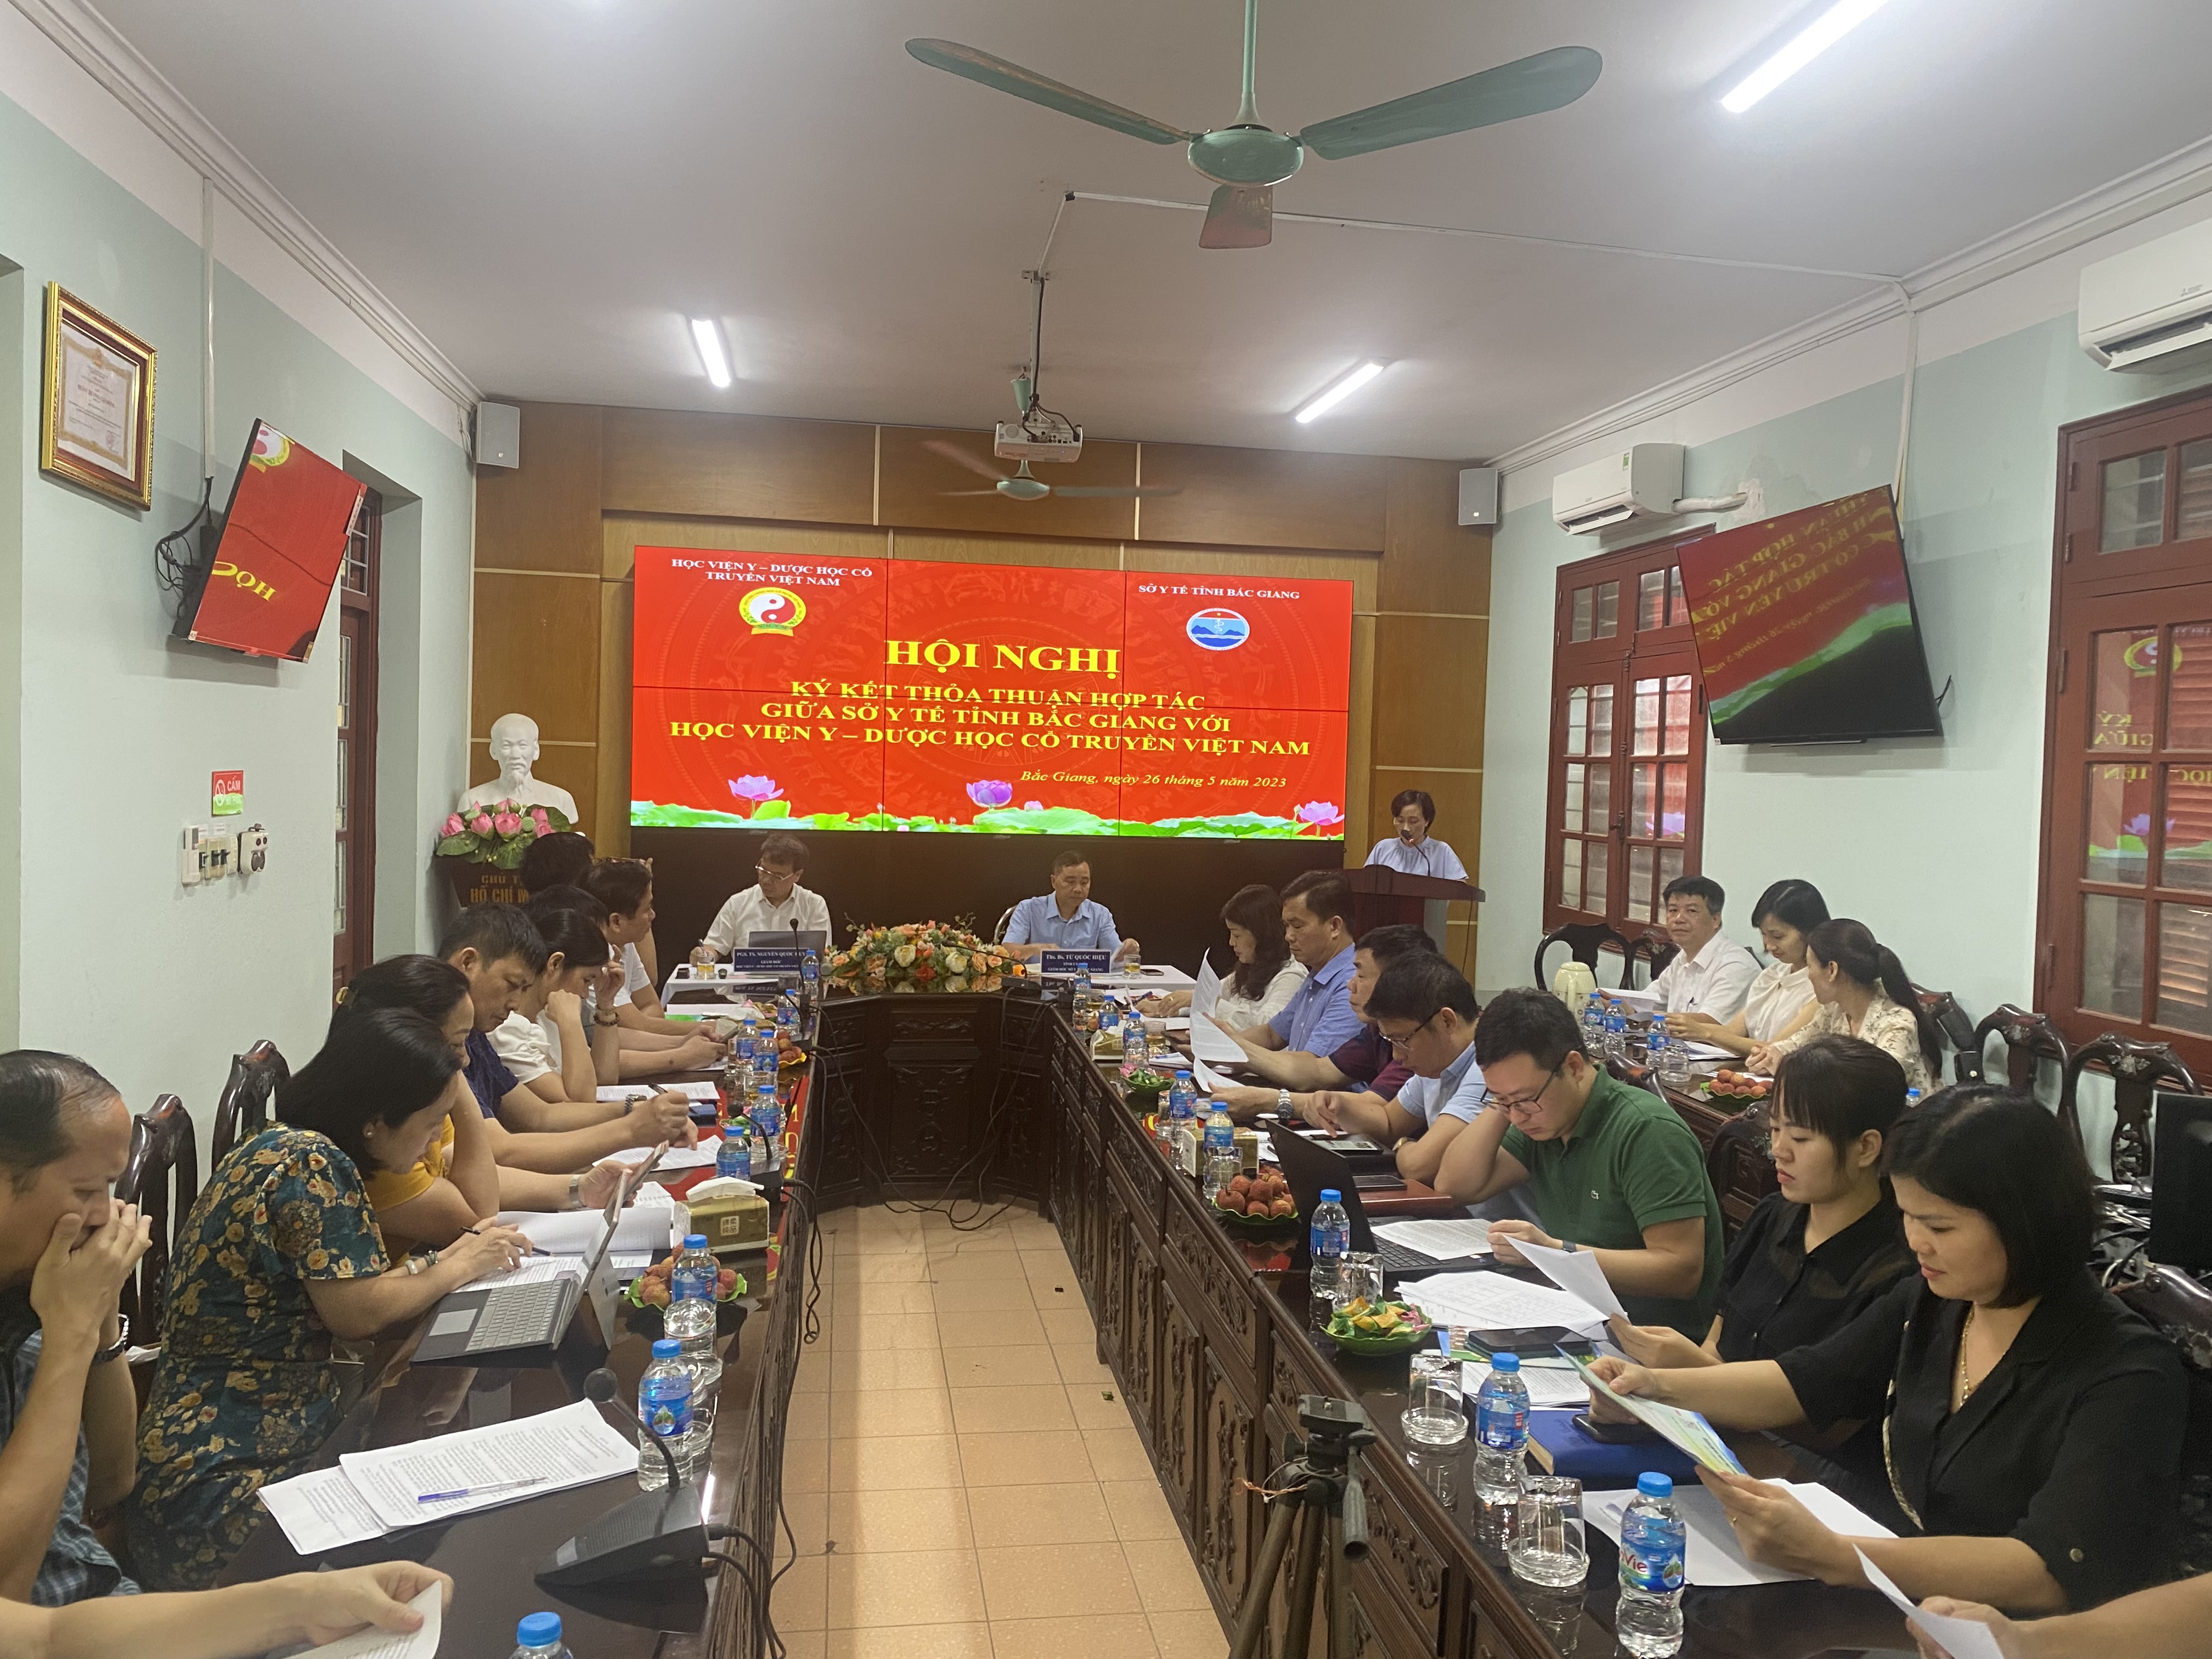 Học viện Y – Dược học cổ truyền Việt Nam hợp tác với Sở Y tế tỉnh Bắc Giang|https://kiemsoatbenhtatbacgiang.vn/chi-tiet-tin-tuc/-/asset_publisher/M0UUAFstbTMq/content/hoc-vien-y-duoc-hoc-co-truyen-viet-nam-hop-tac-voi-so-y-te-tinh-bac-giang